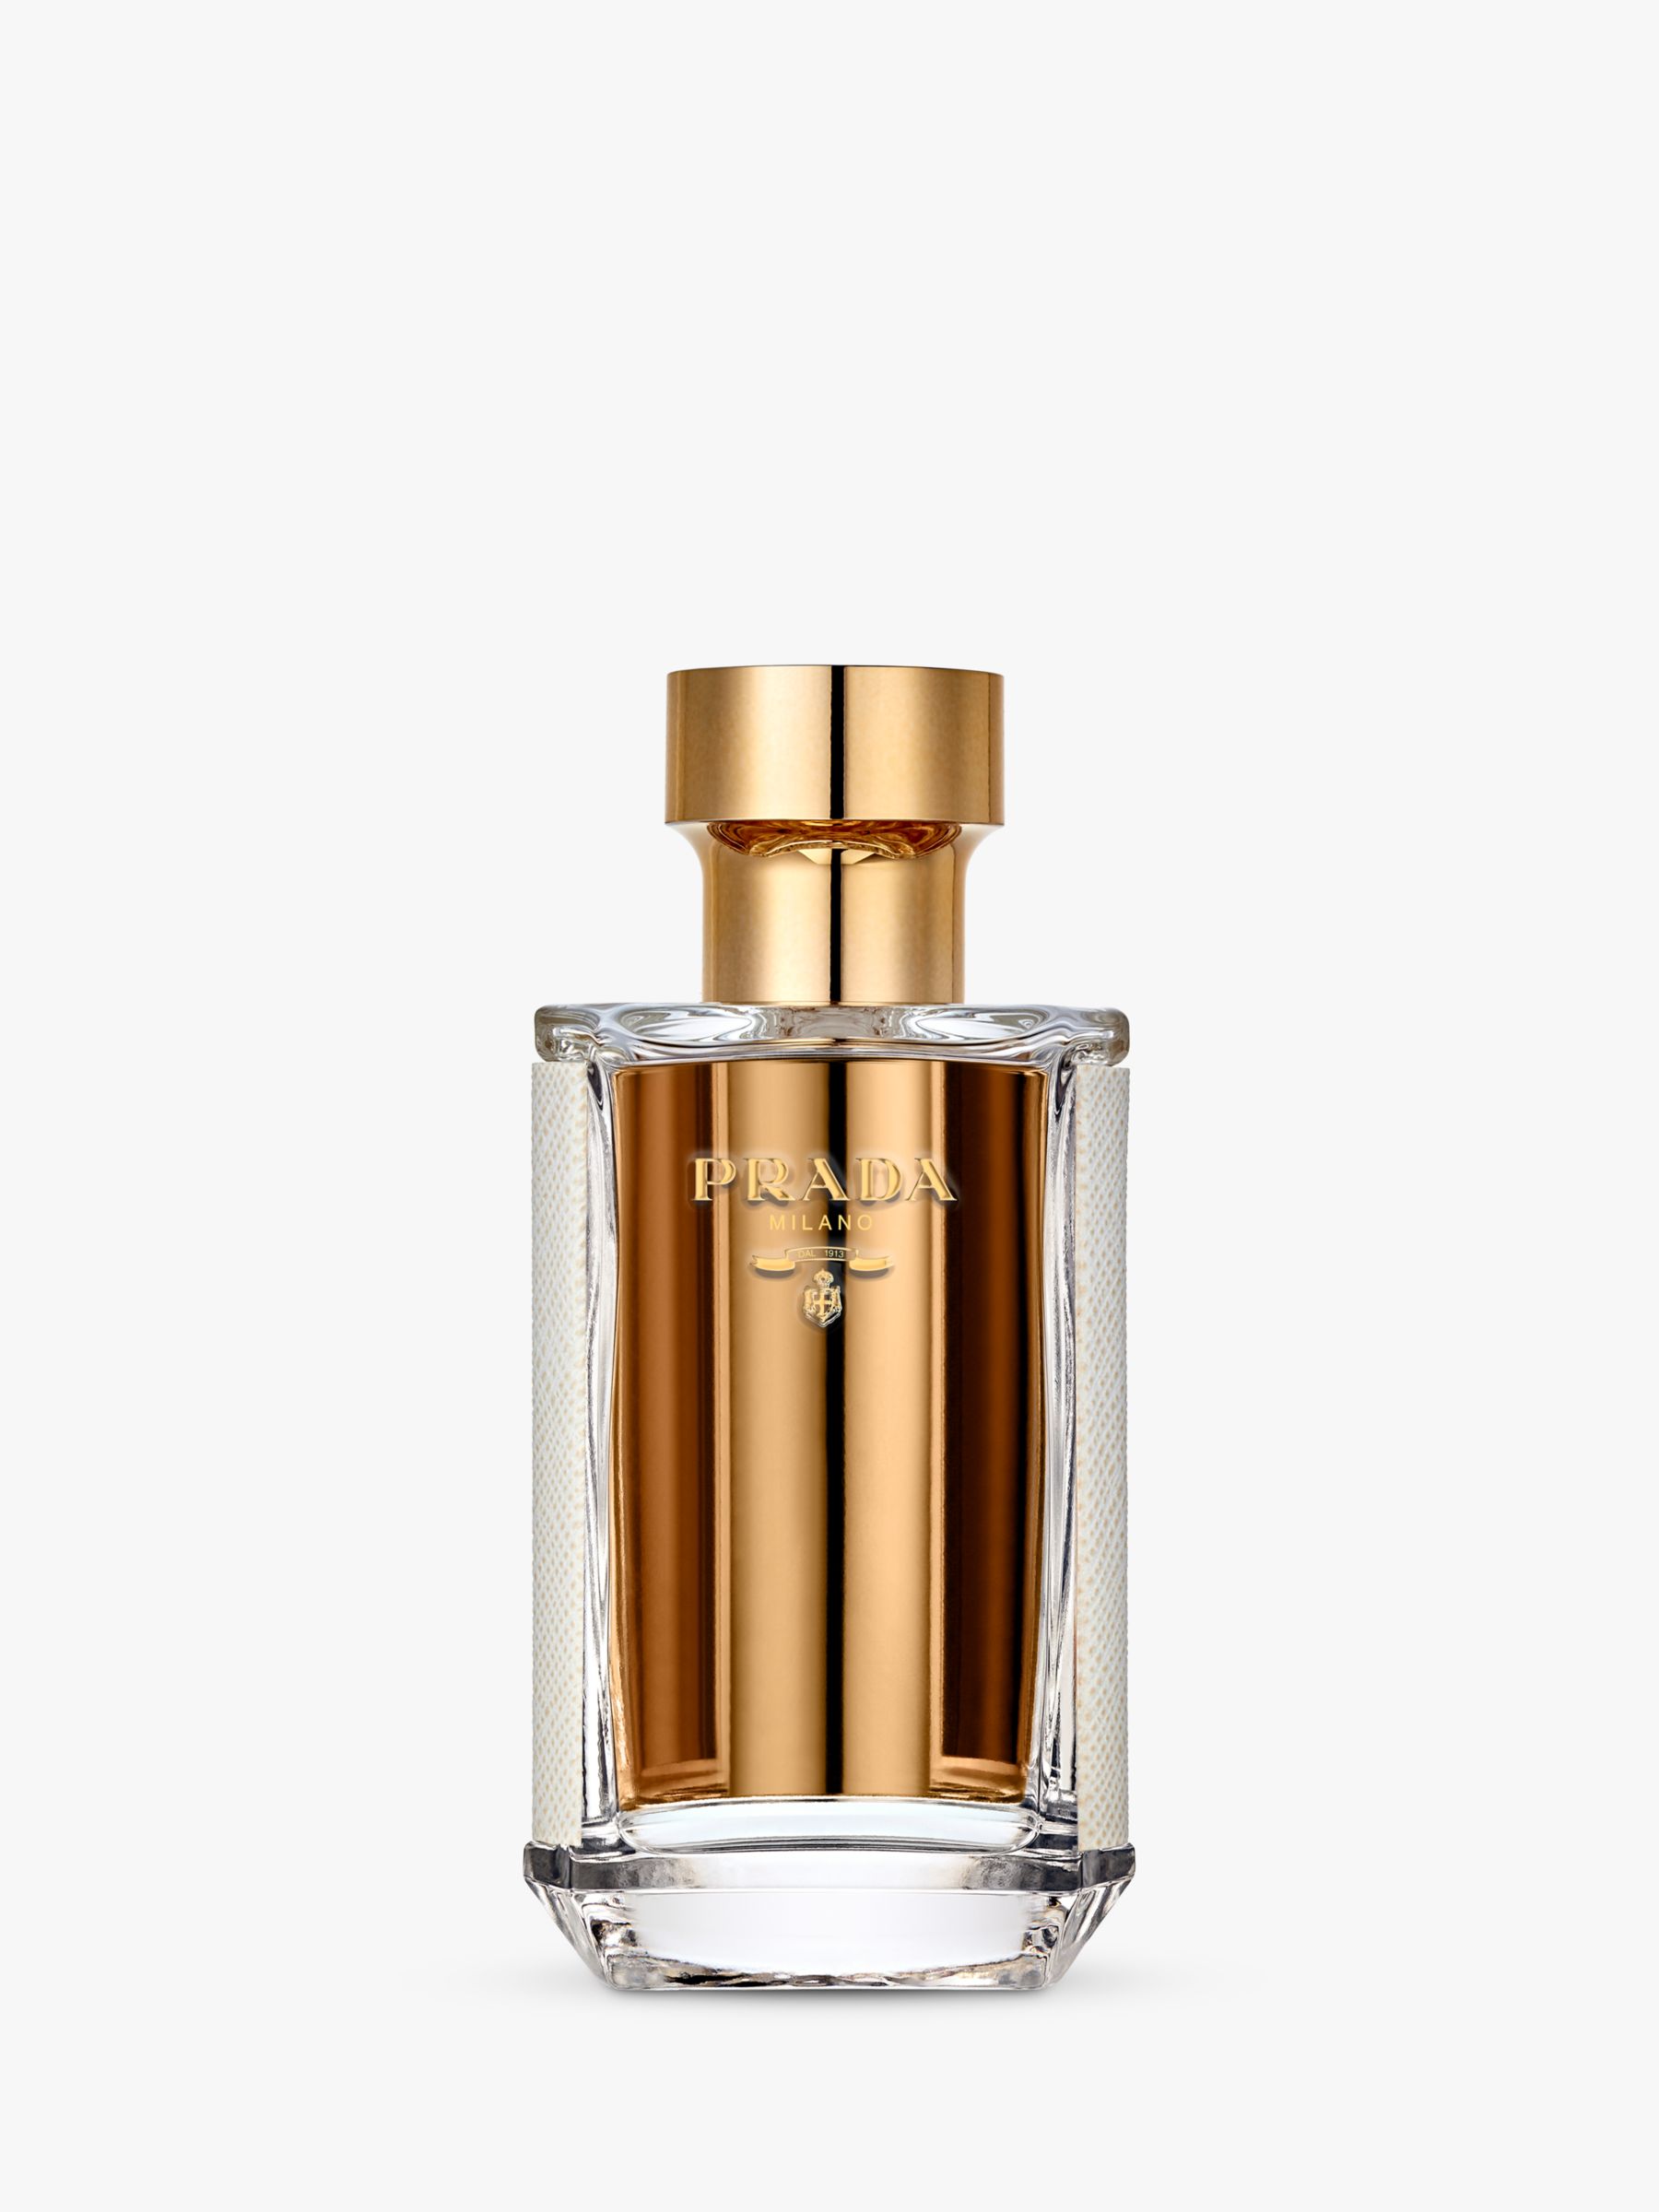 Prada La Femme Eau de Parfum, 50ml at John Lewis & Partners